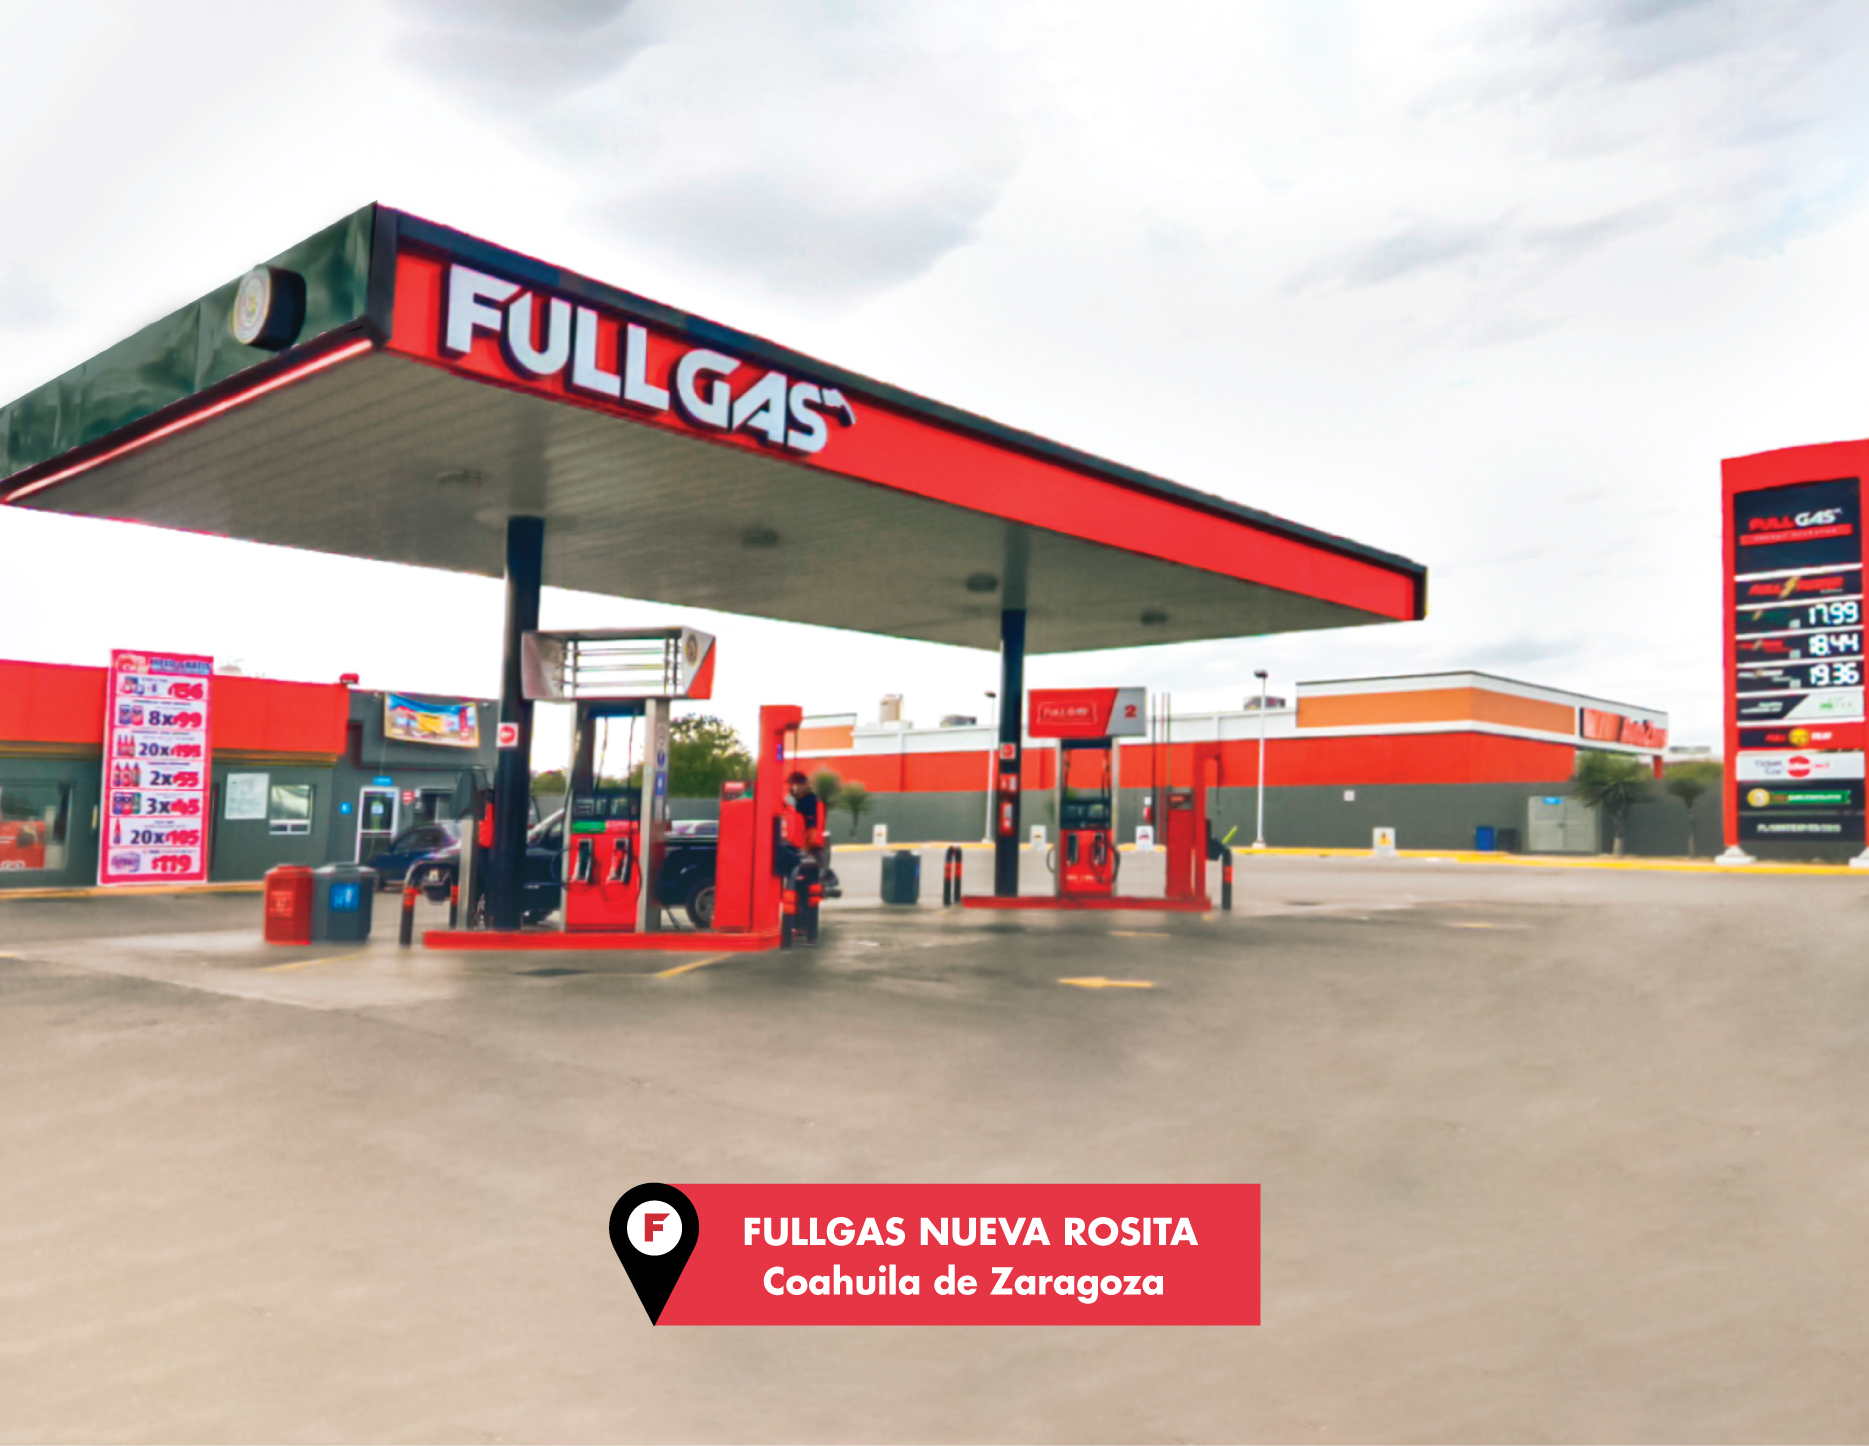 FullGas on X: Llena tu tanque en nuestras gasolineras #FullGas y